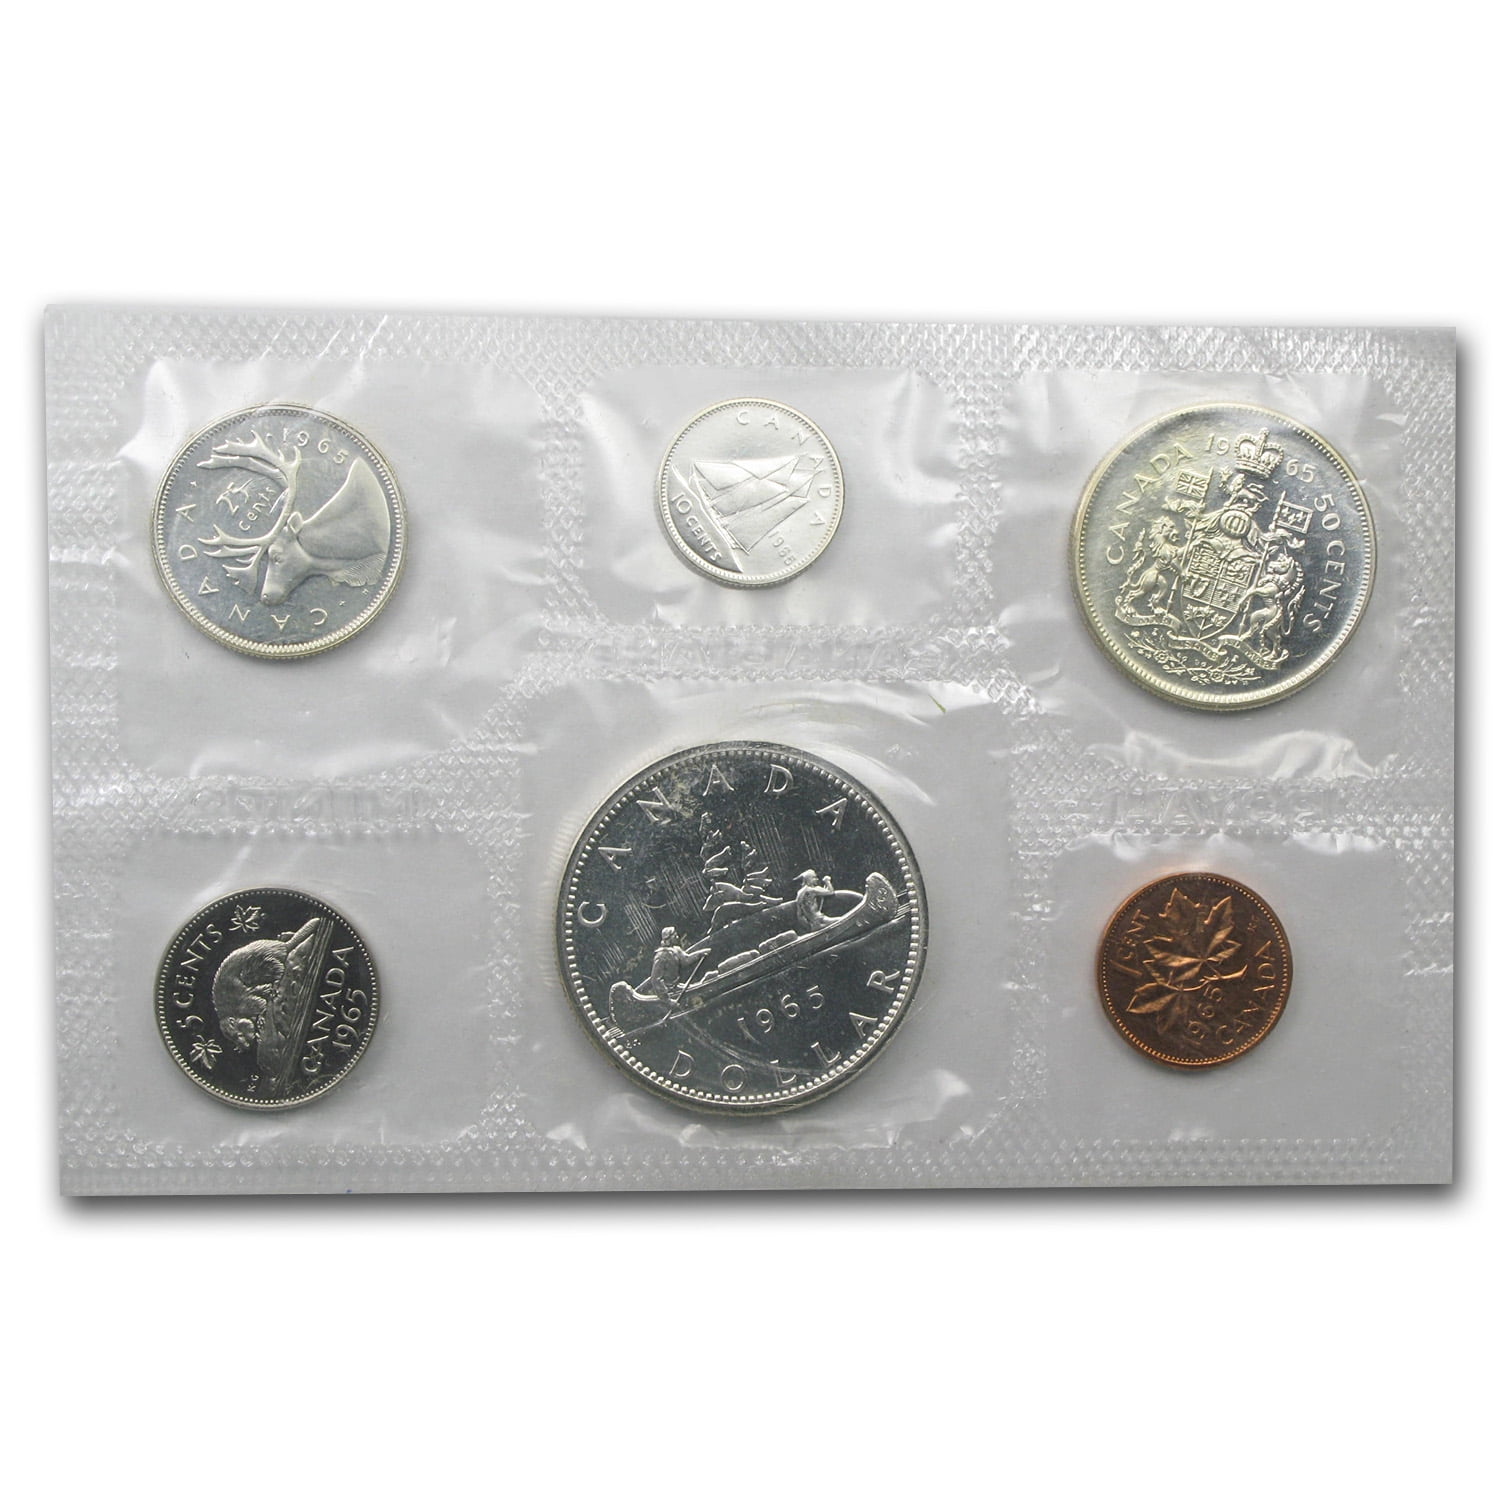 MINT UNC. 6 Coins Cent to $1 1971 Canada PL Set 